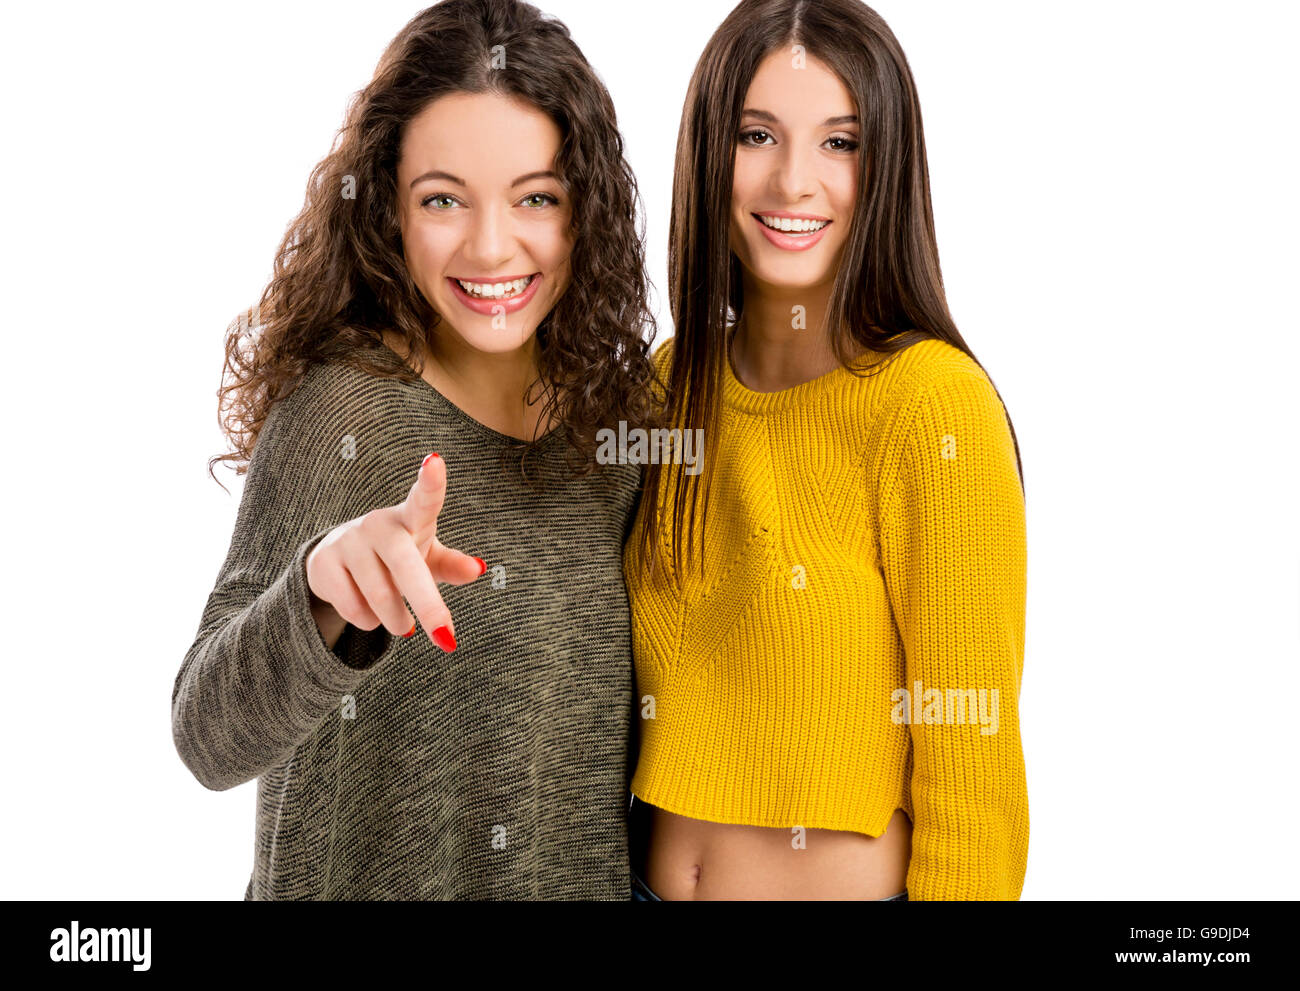 Portrait de deux belles filles et de pointage à la recherche de l'appareil photo Banque D'Images